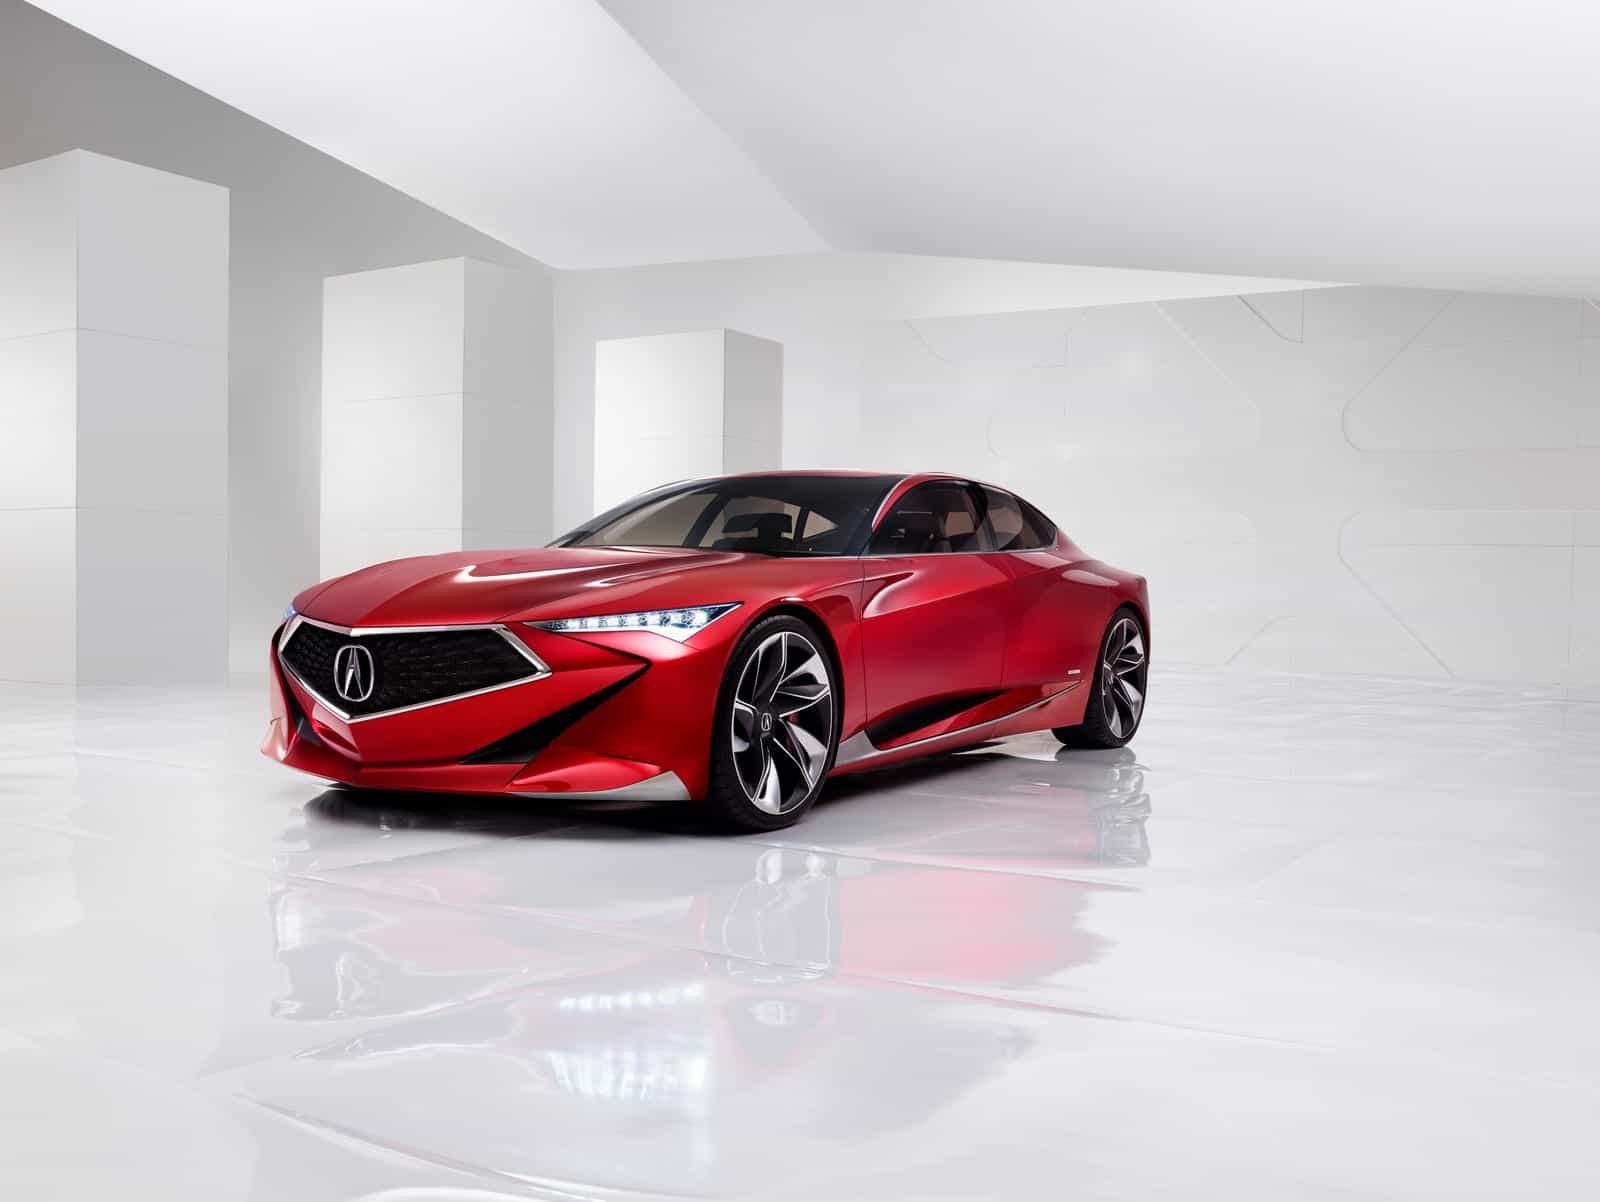 Acura Precision Concept, le futur design Honda?